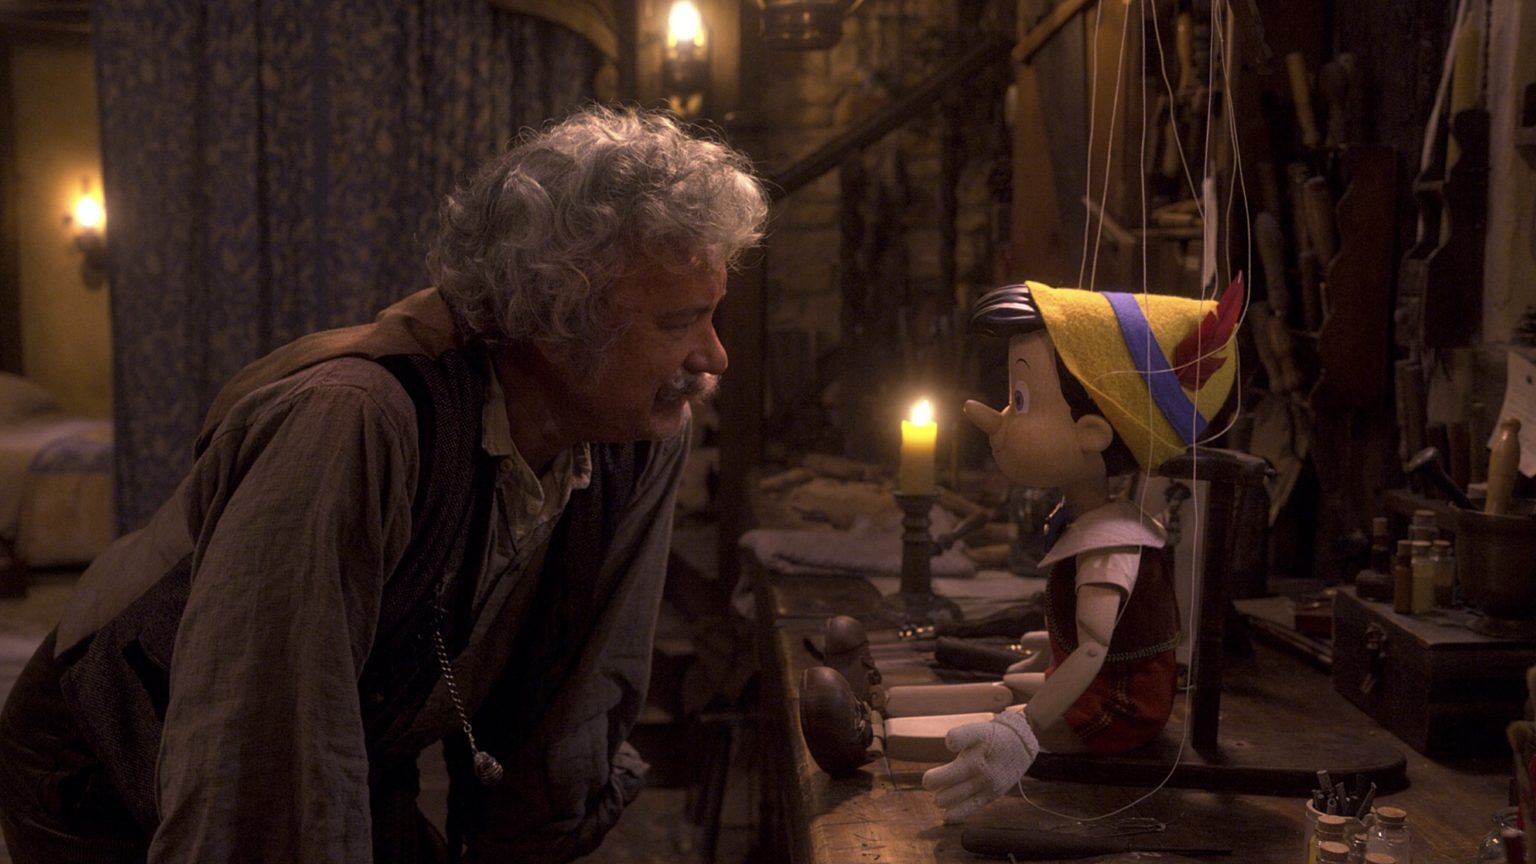 Erster Trailer zur Neuverfilmung von Pinocchio mit tom Hanks auf Disney Plus.